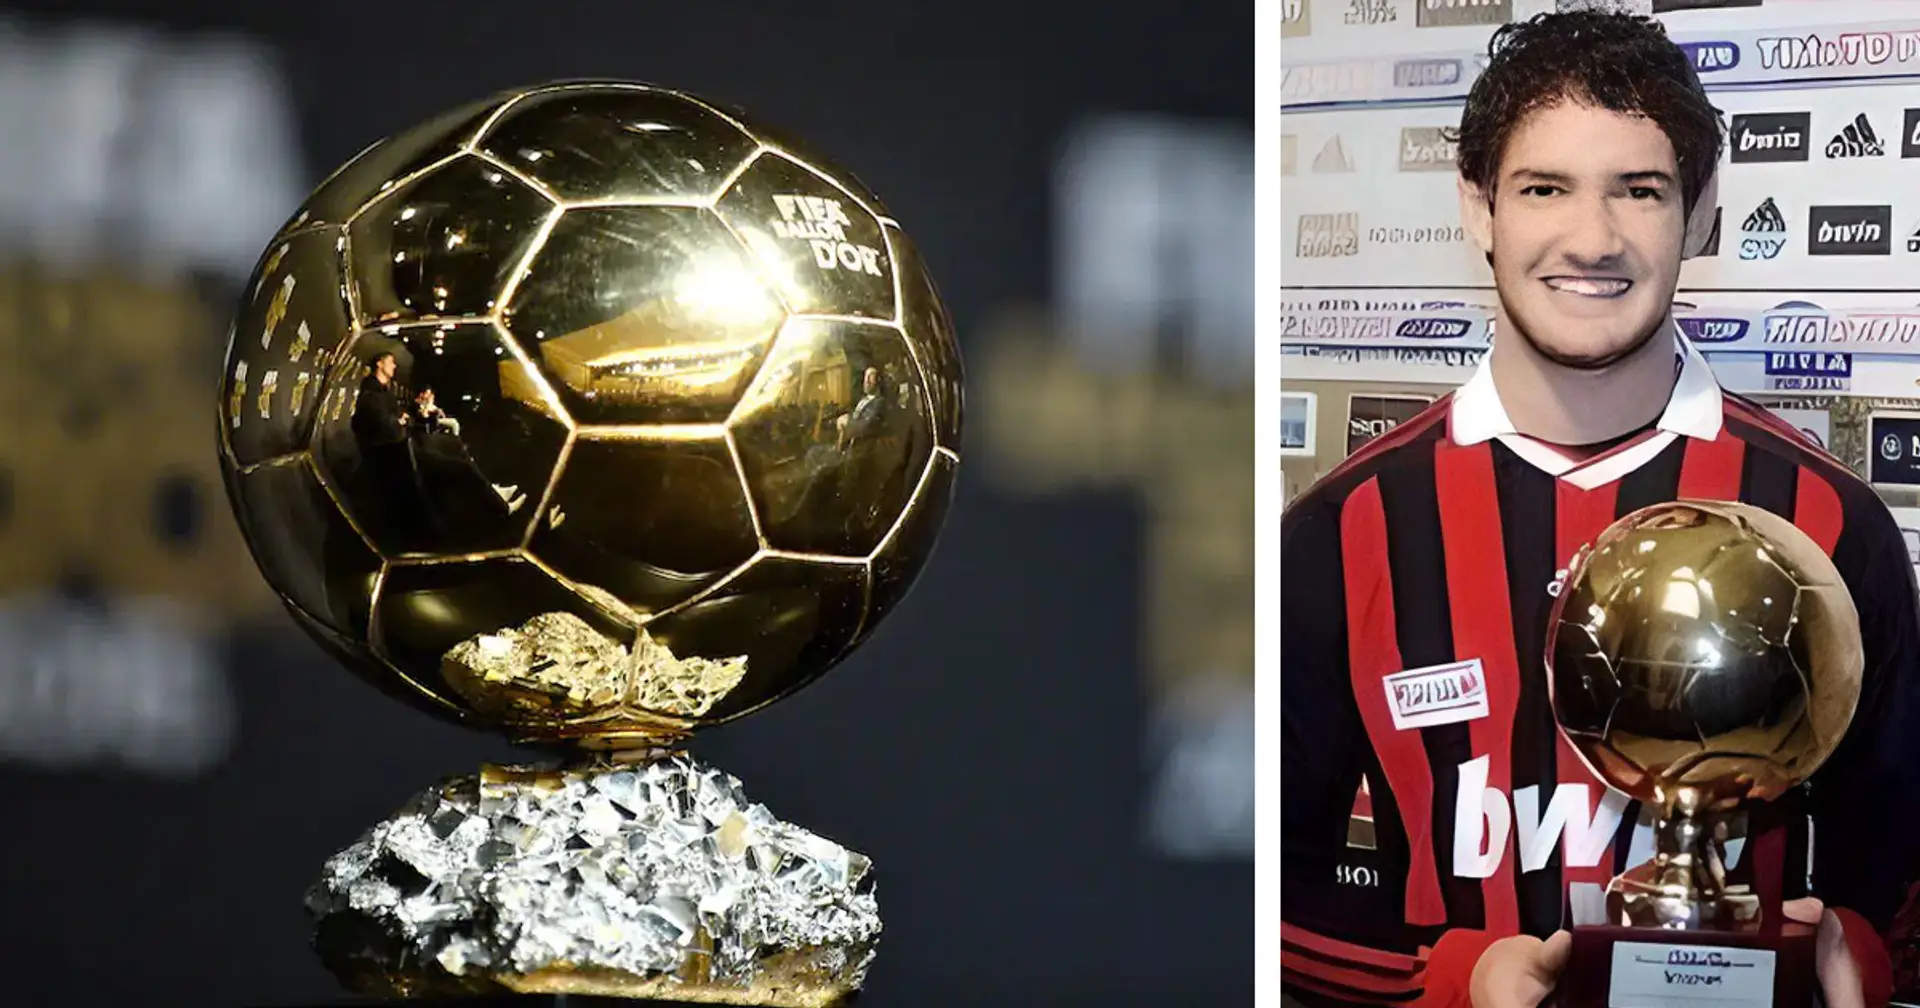 Perchè Pato regge un Pallone d'Oro in questa foto ai tempi del Milan, anche se non l'ha vinto? La spiegazione